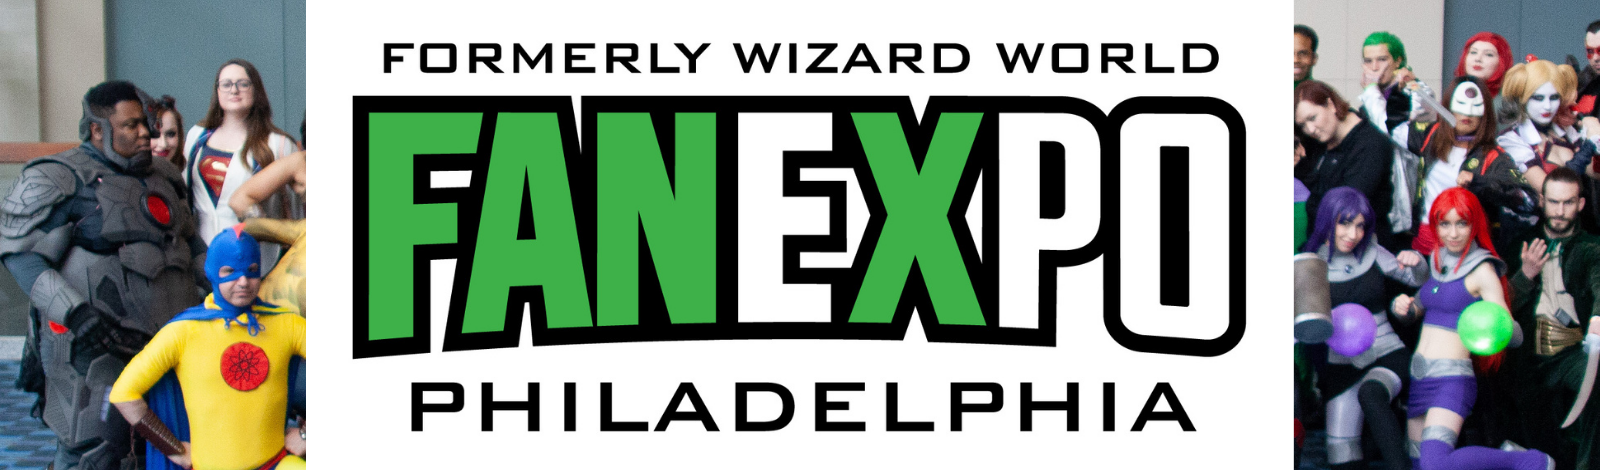 FAN EXPO Philadelphia formerly Wizard World